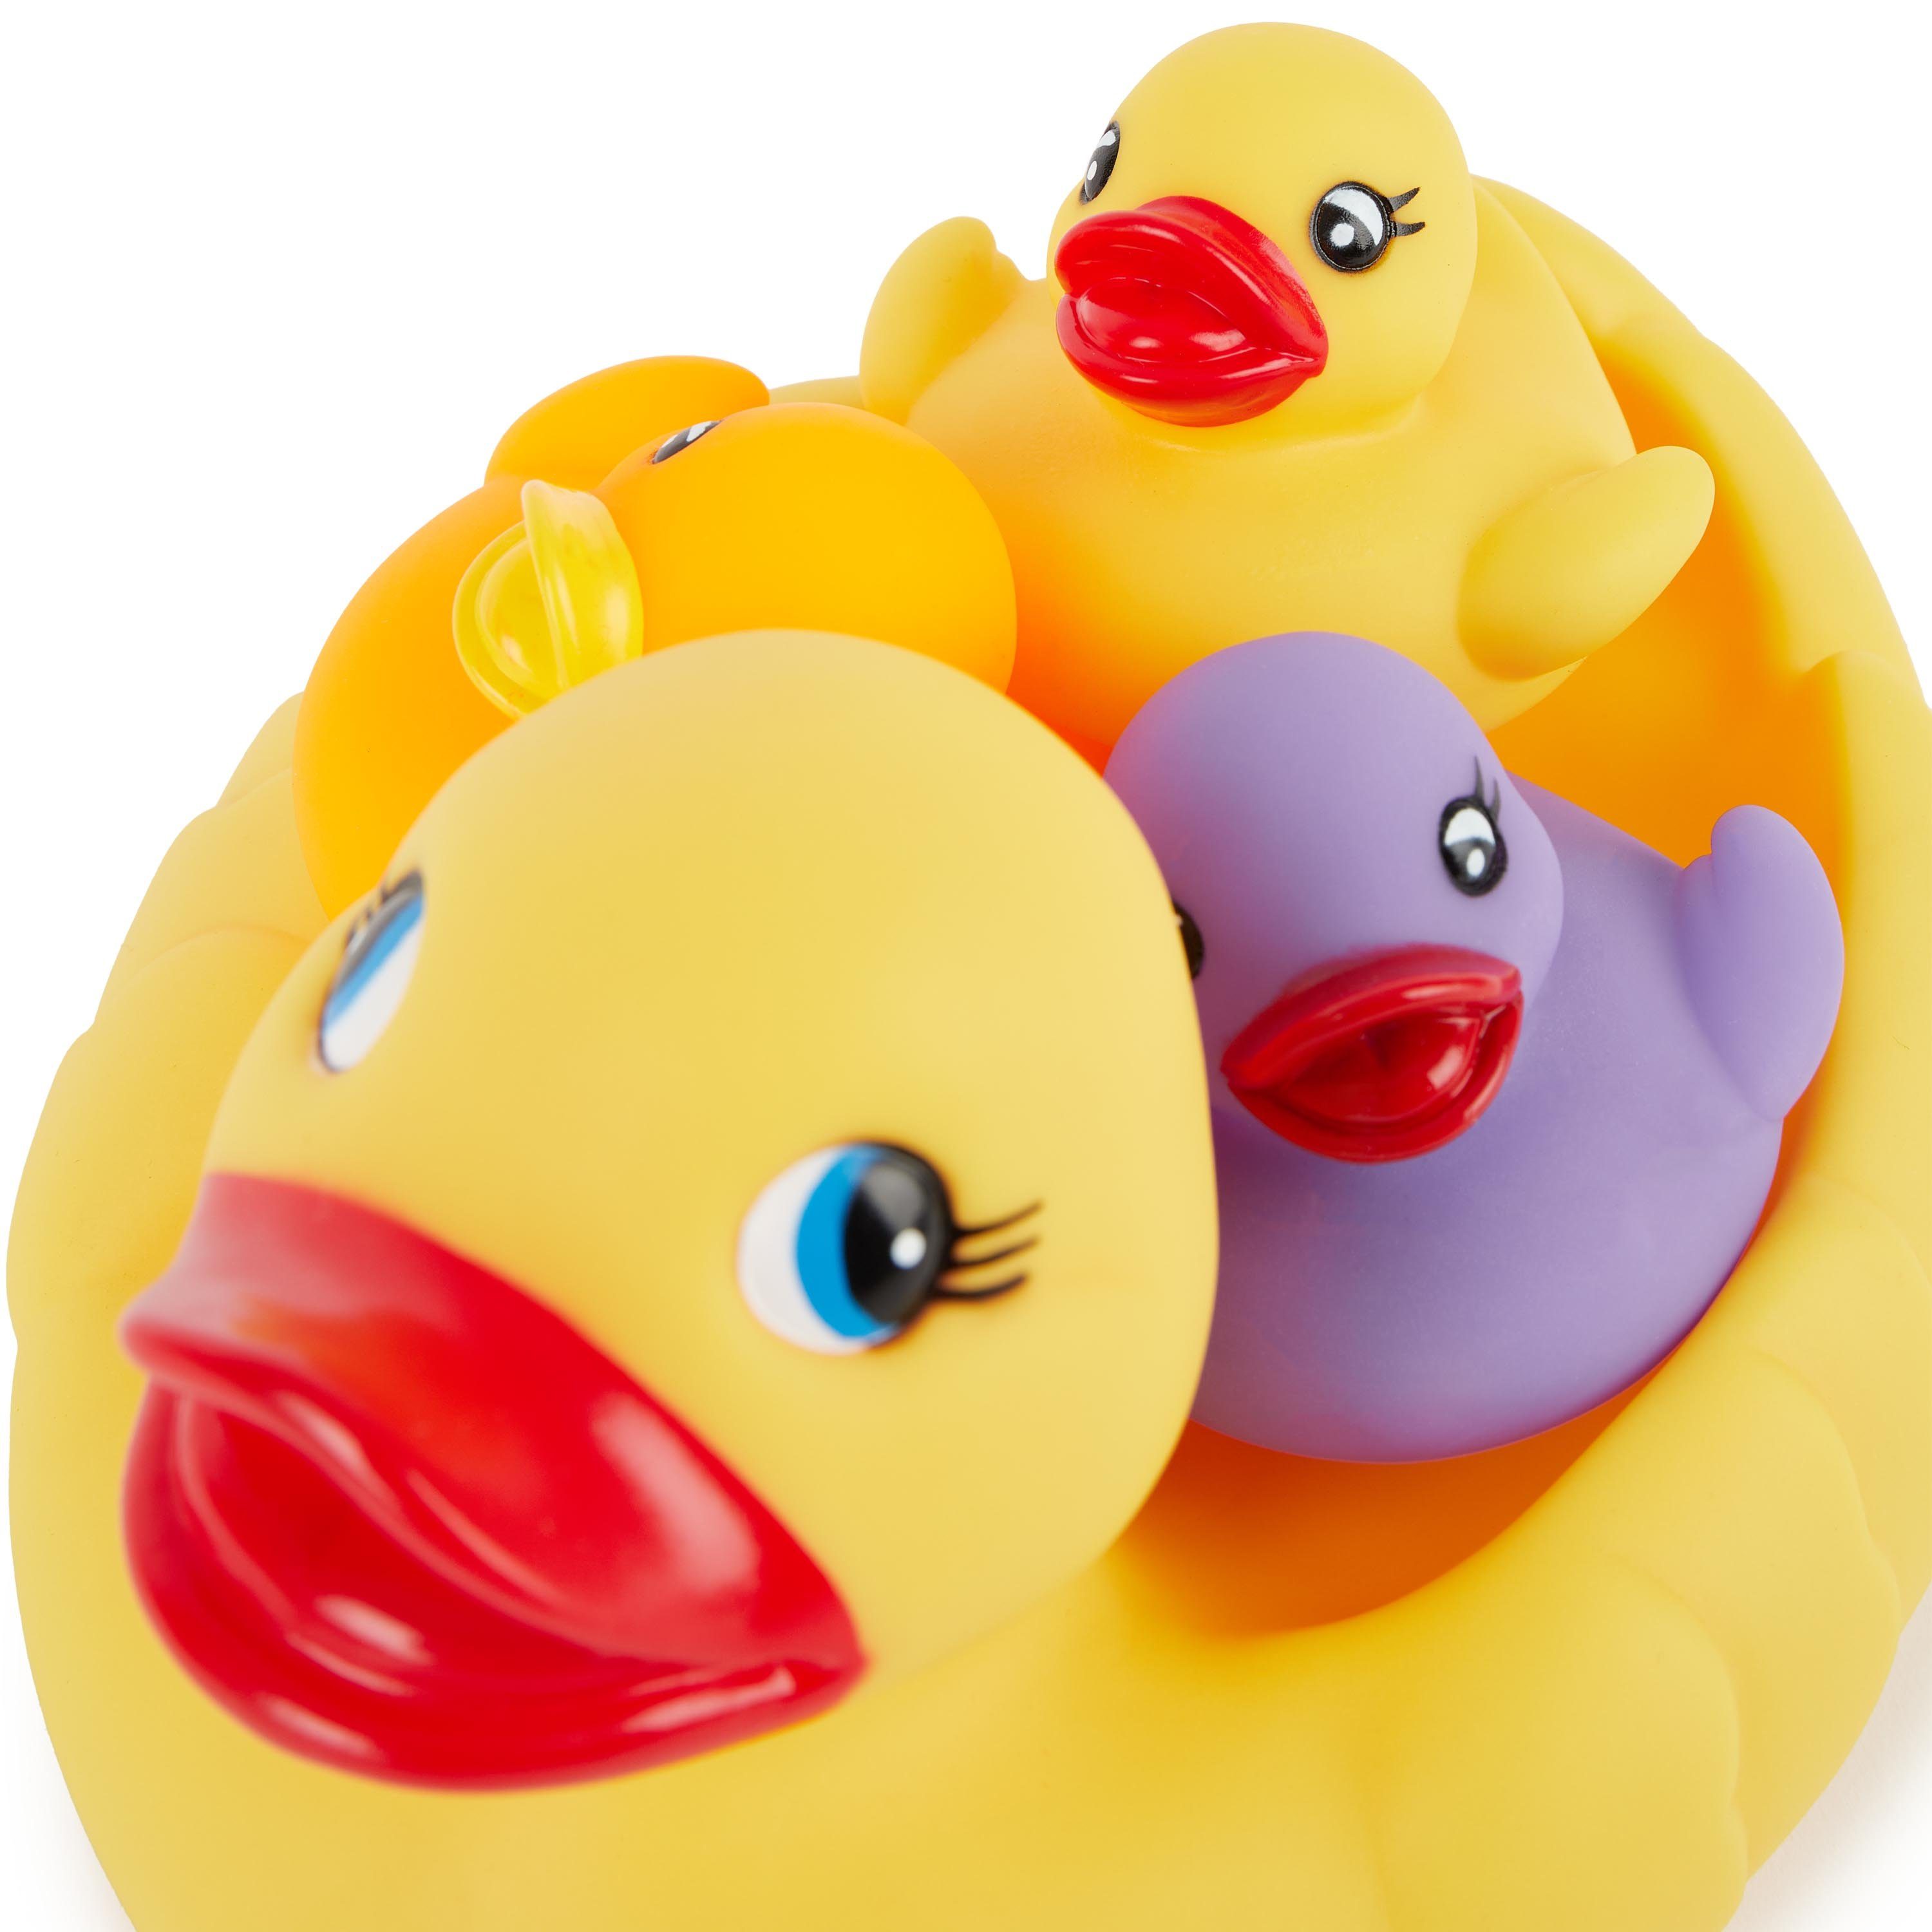 Spielzeug Badewannenspielzeug BIECO Badespielzeug Bieco Schwimmenten-Familie 4 Stück Badeenten Set Quitsche Ente Badeente Baby B